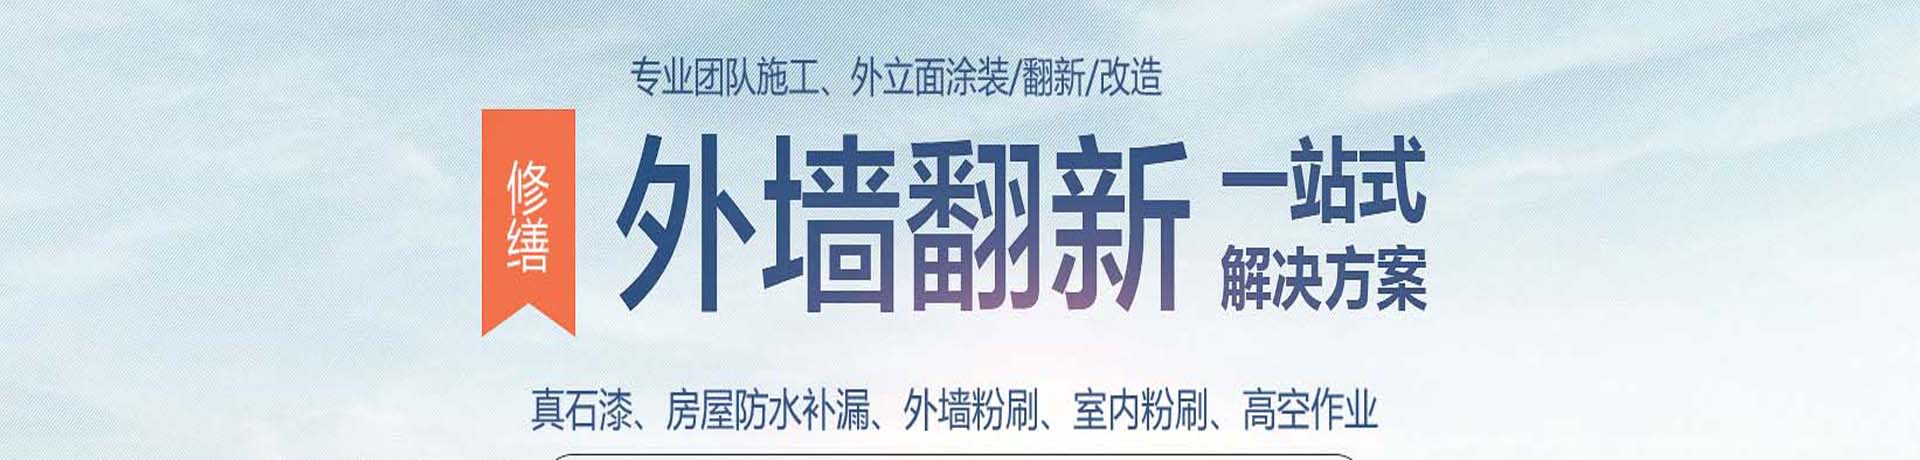 上海外墙高空涂料粉刷,外墙真石漆施工,上海外墙翻新公司,专业的墙面涂刷服务-上海物美环境工程有限公司 - 【推荐】 - 联系我们